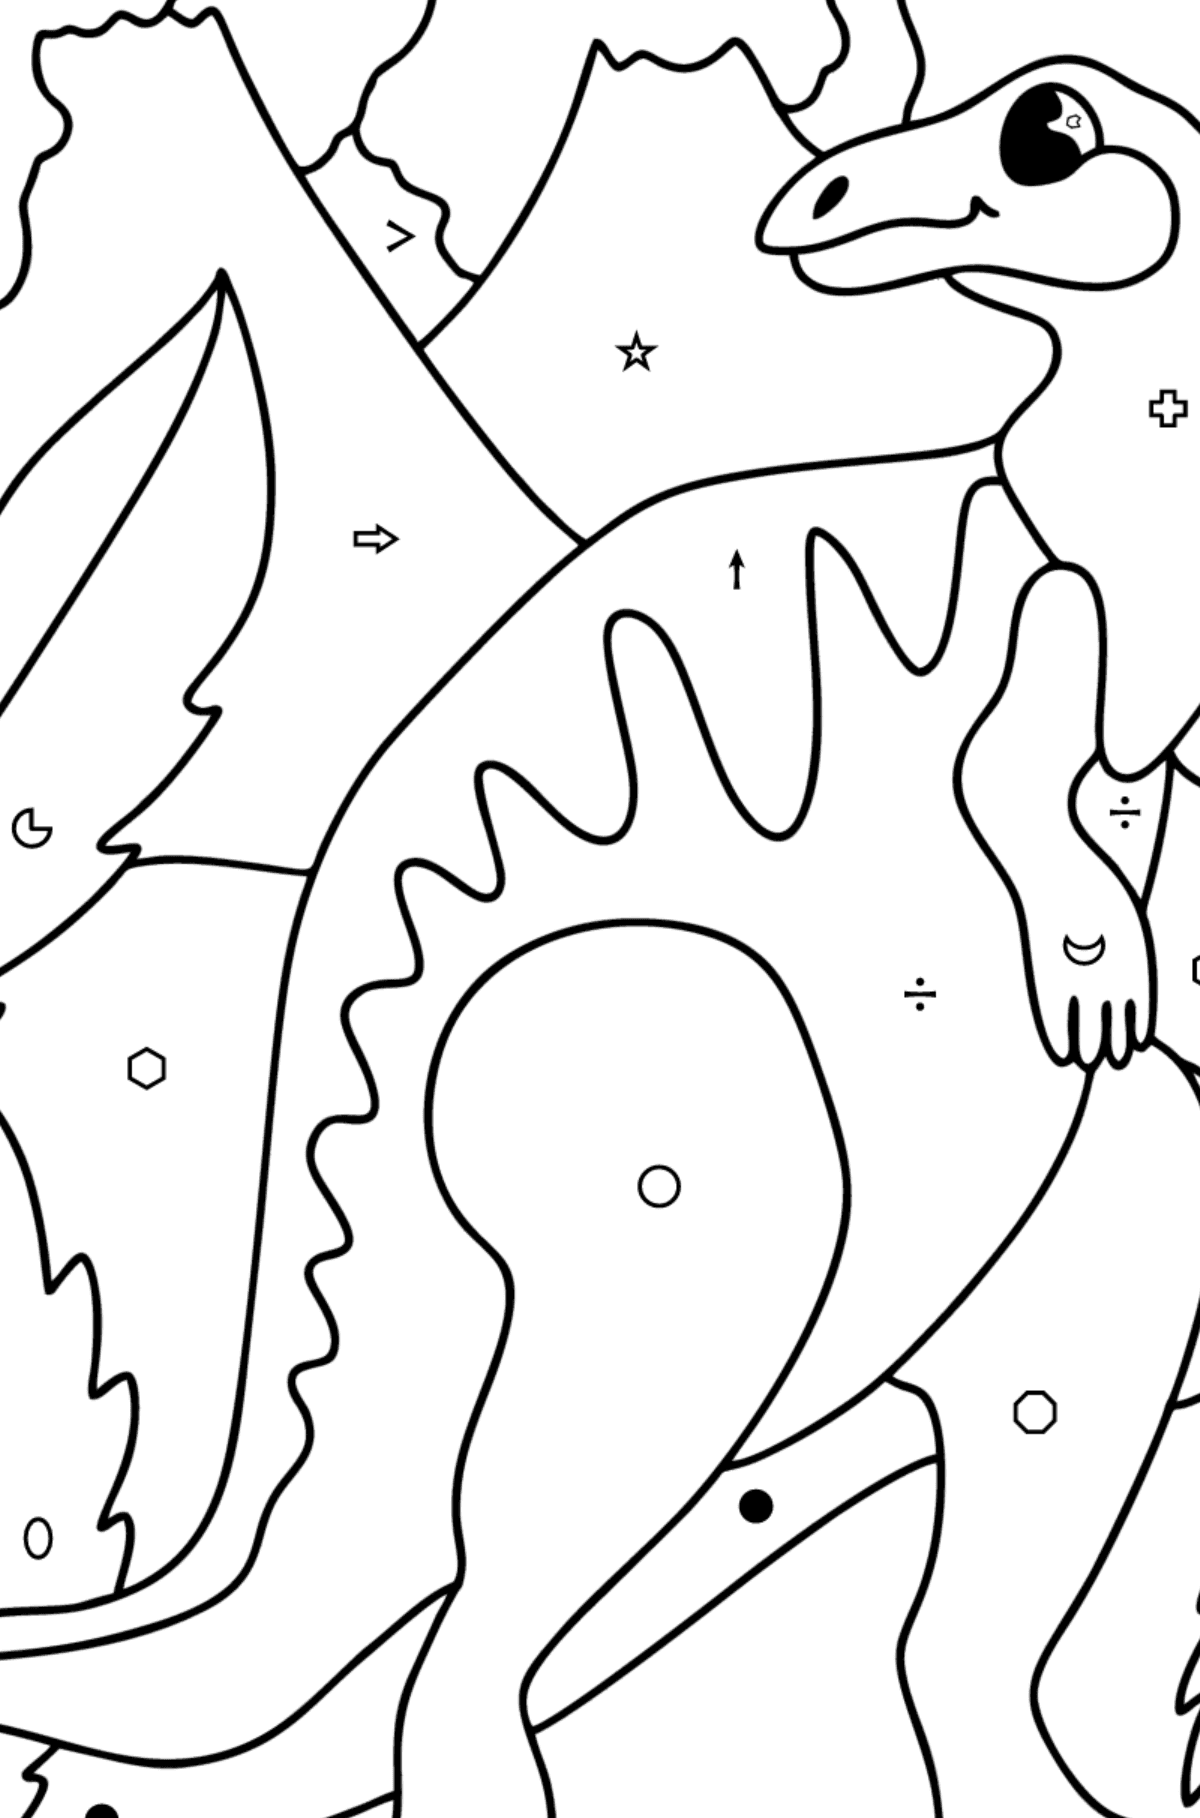 Tegning til fargelegging hadrosaur - Fargelegge etter symboler og geometriske former for barn